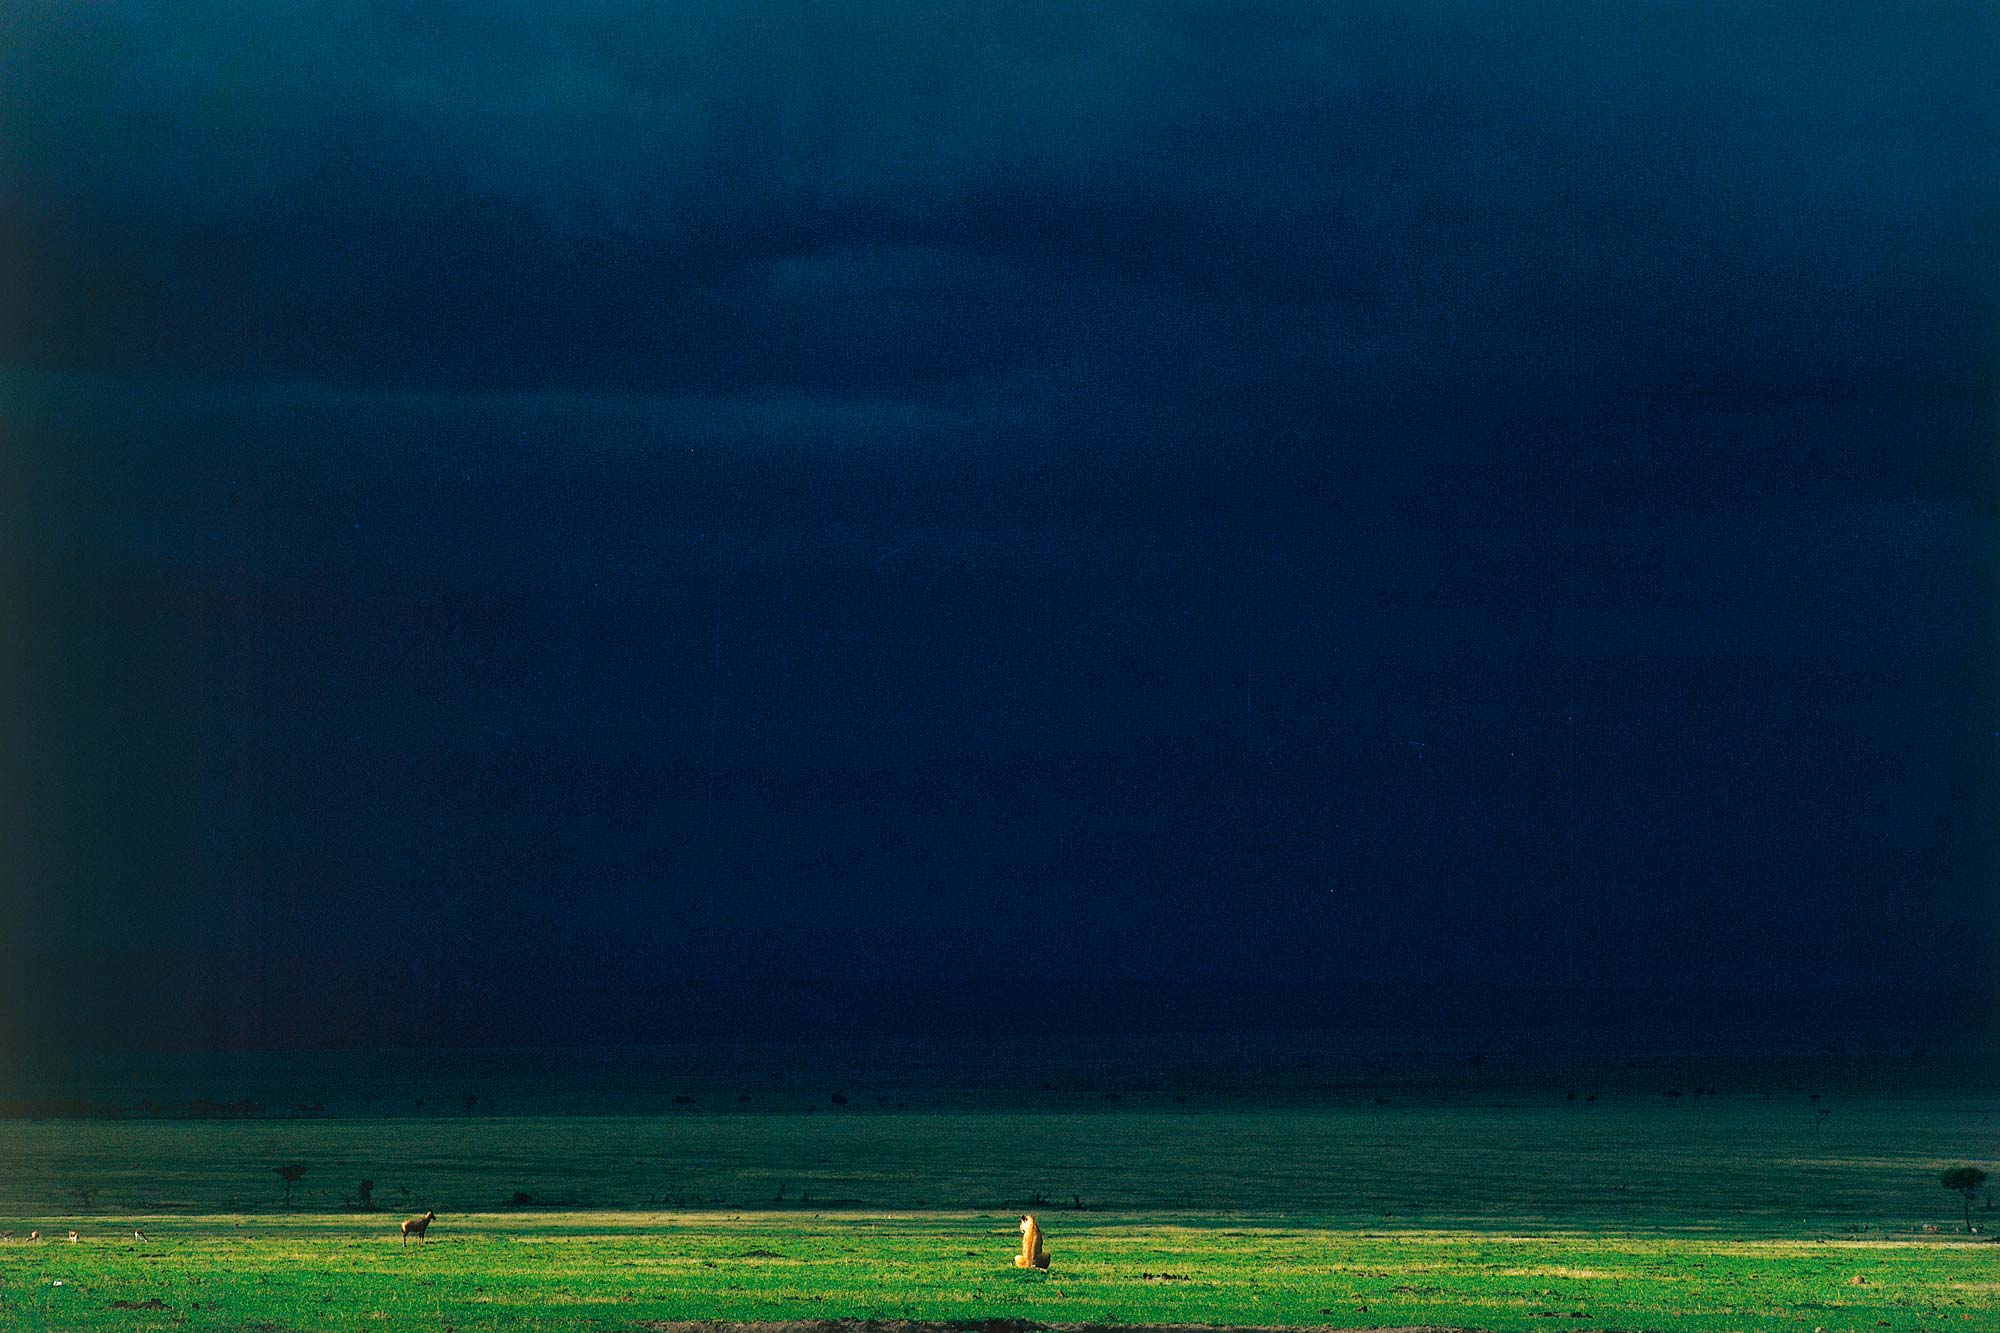 La lionne et la lumière - Yann Arthus-Bertrand